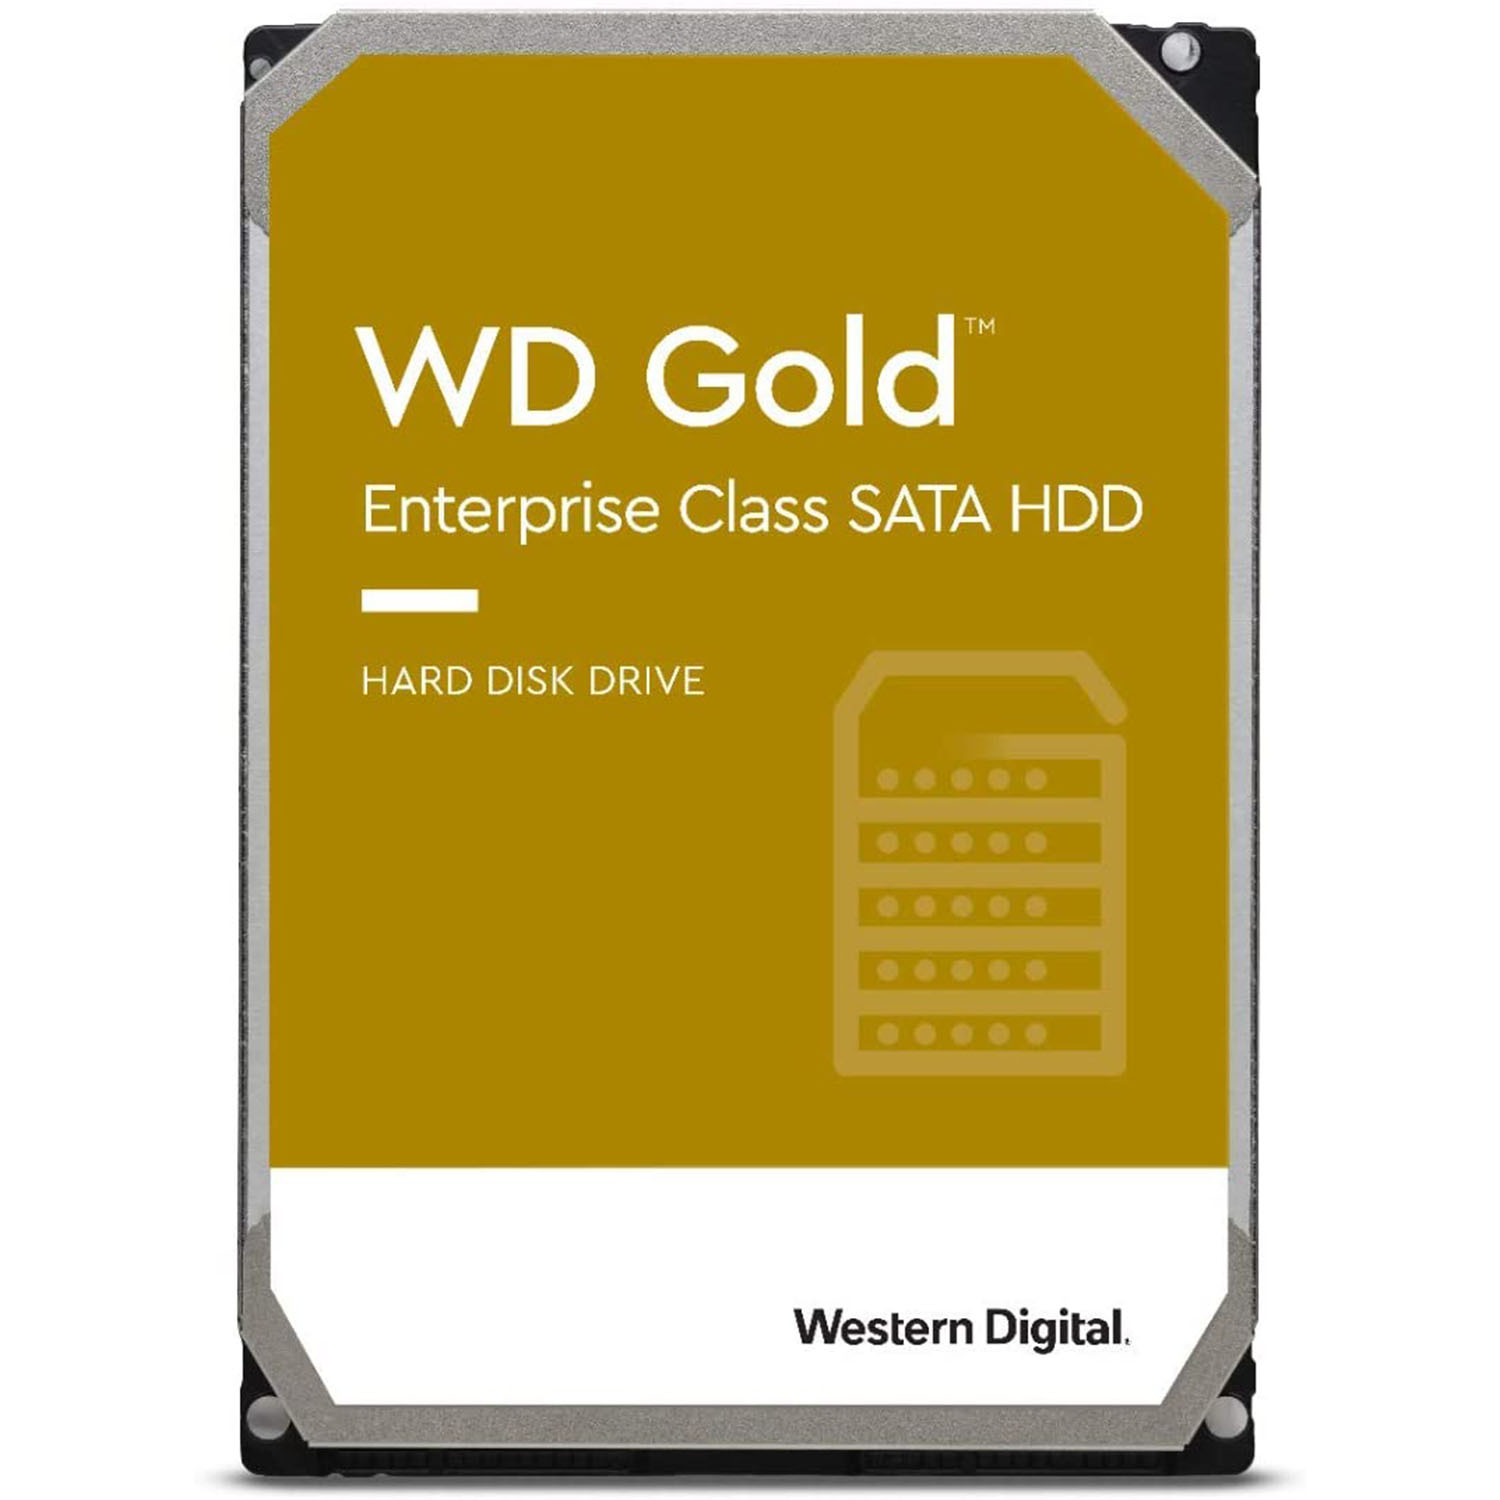 هارددیسک اینترنال وسترن دیجیتال مدل Gold WD121KRYZ ظرفیت 12 ترابایت